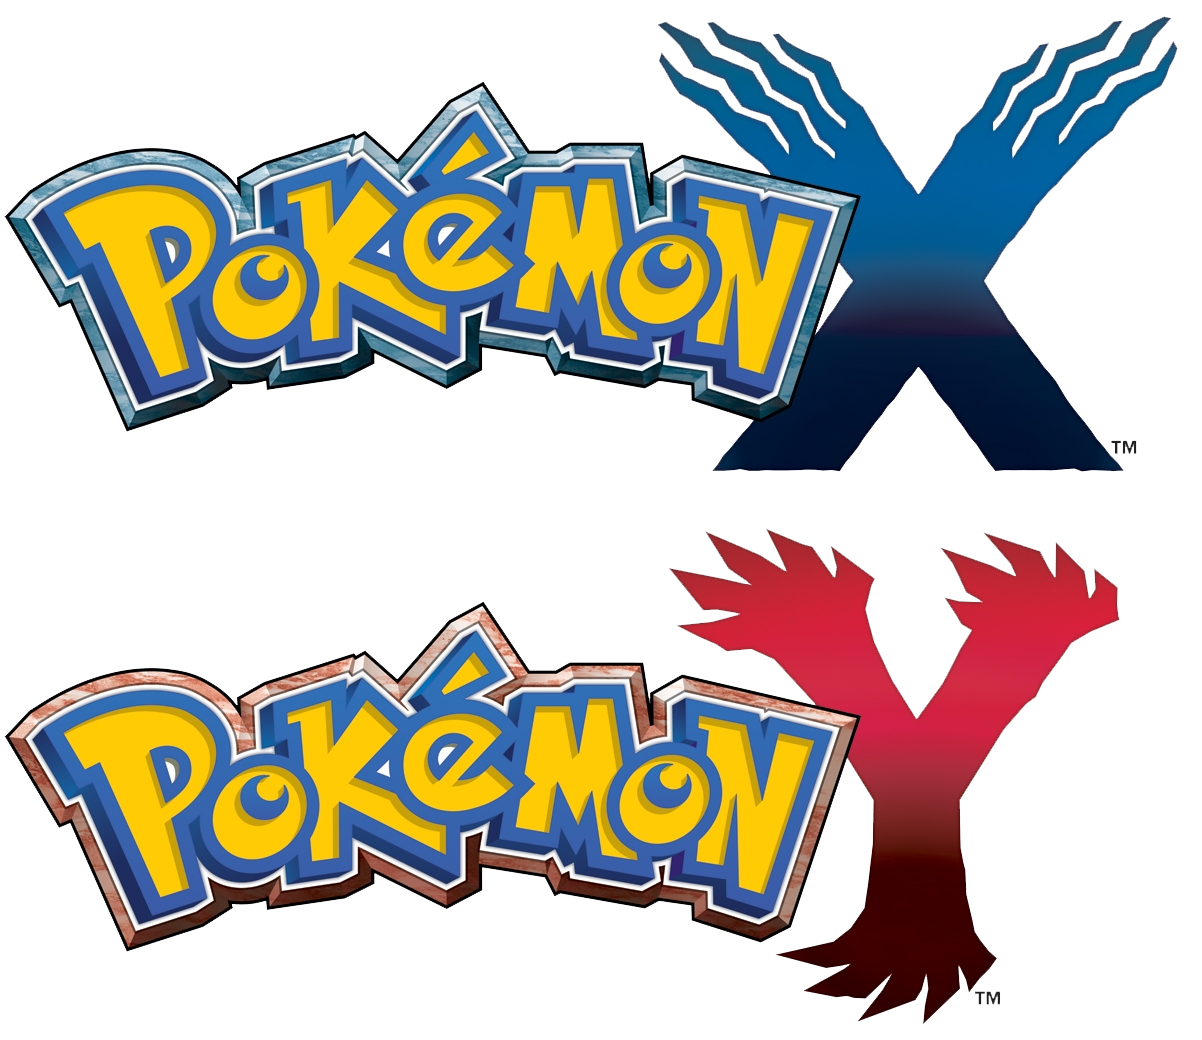 Pokémon X and Y - Wikipedia